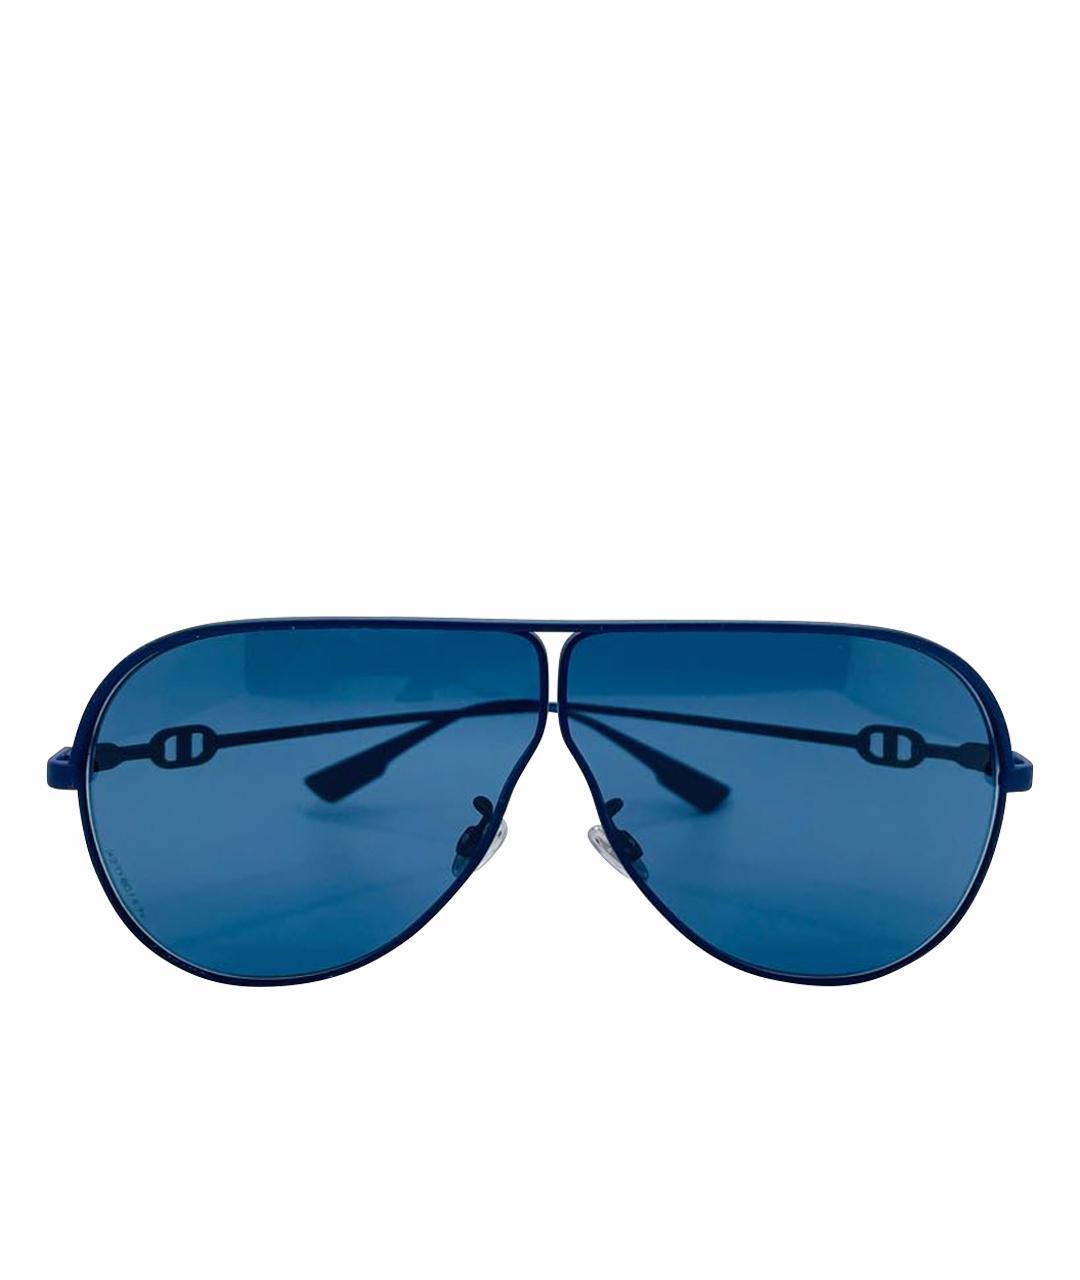 CHRISTIAN DIOR Темно-синие металлические солнцезащитные очки, фото 1